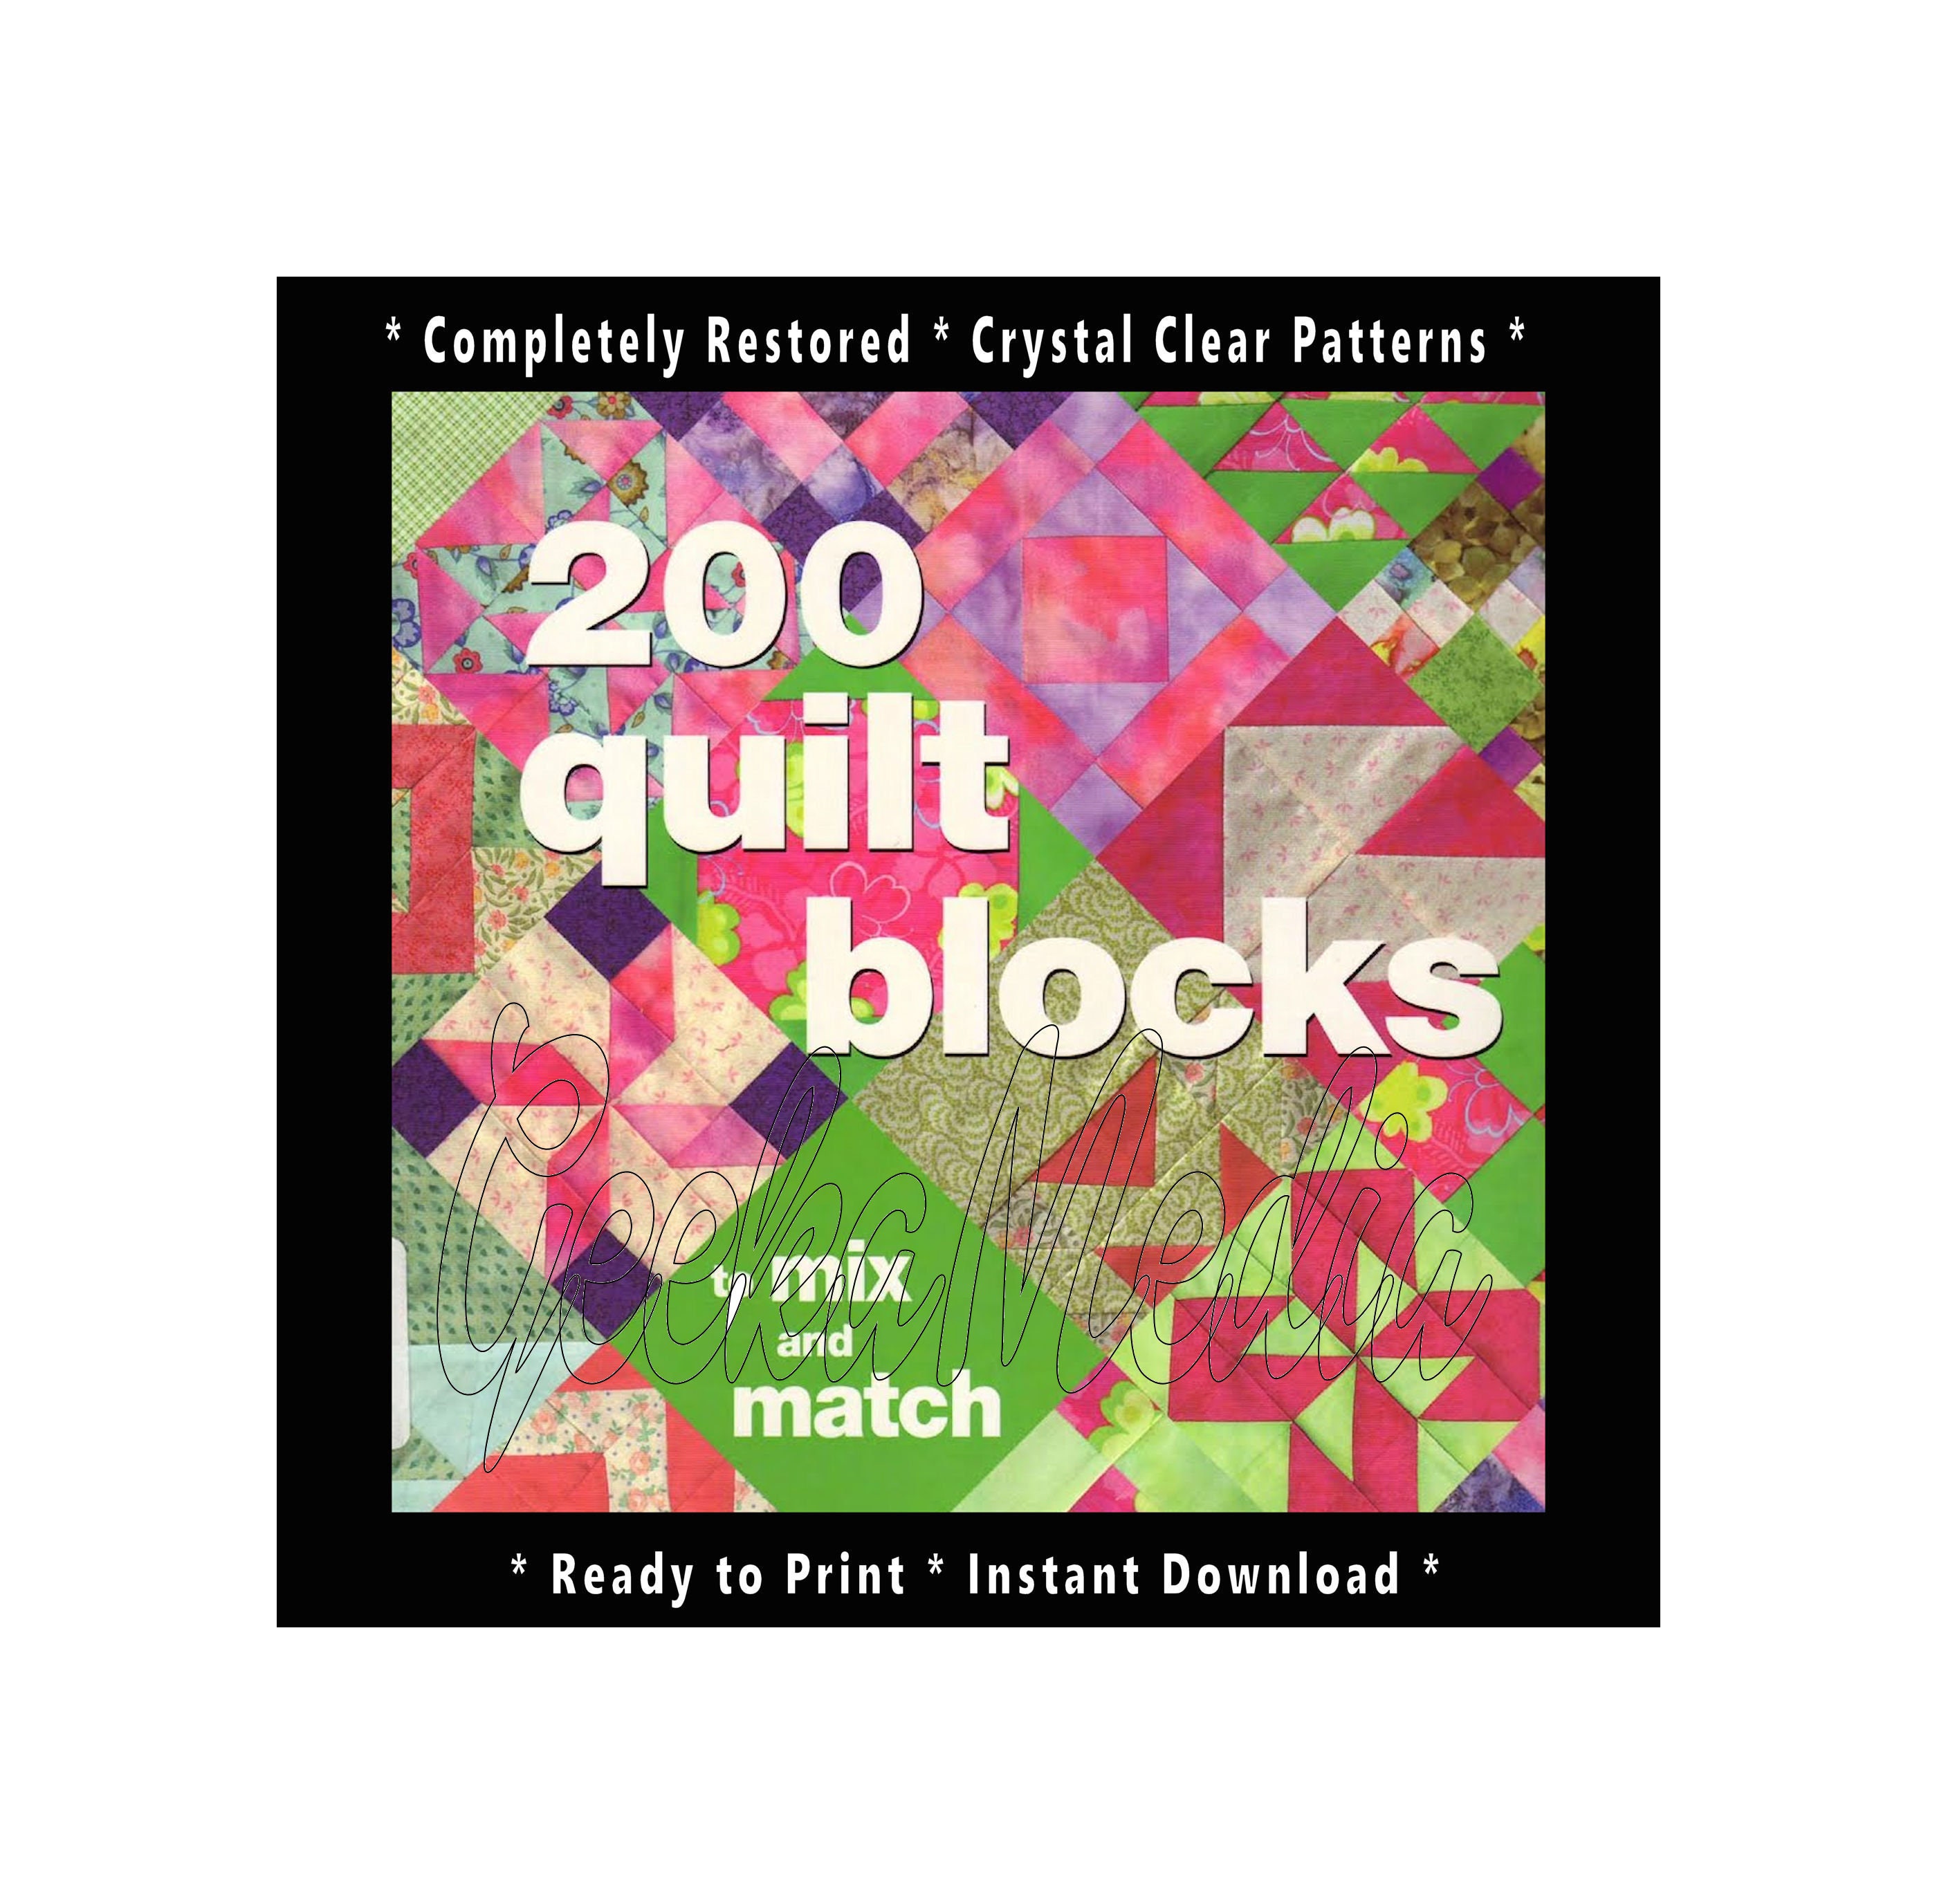 Modern Tumbling Blocks Cross Stitch Needlepoint Pattern PDF 